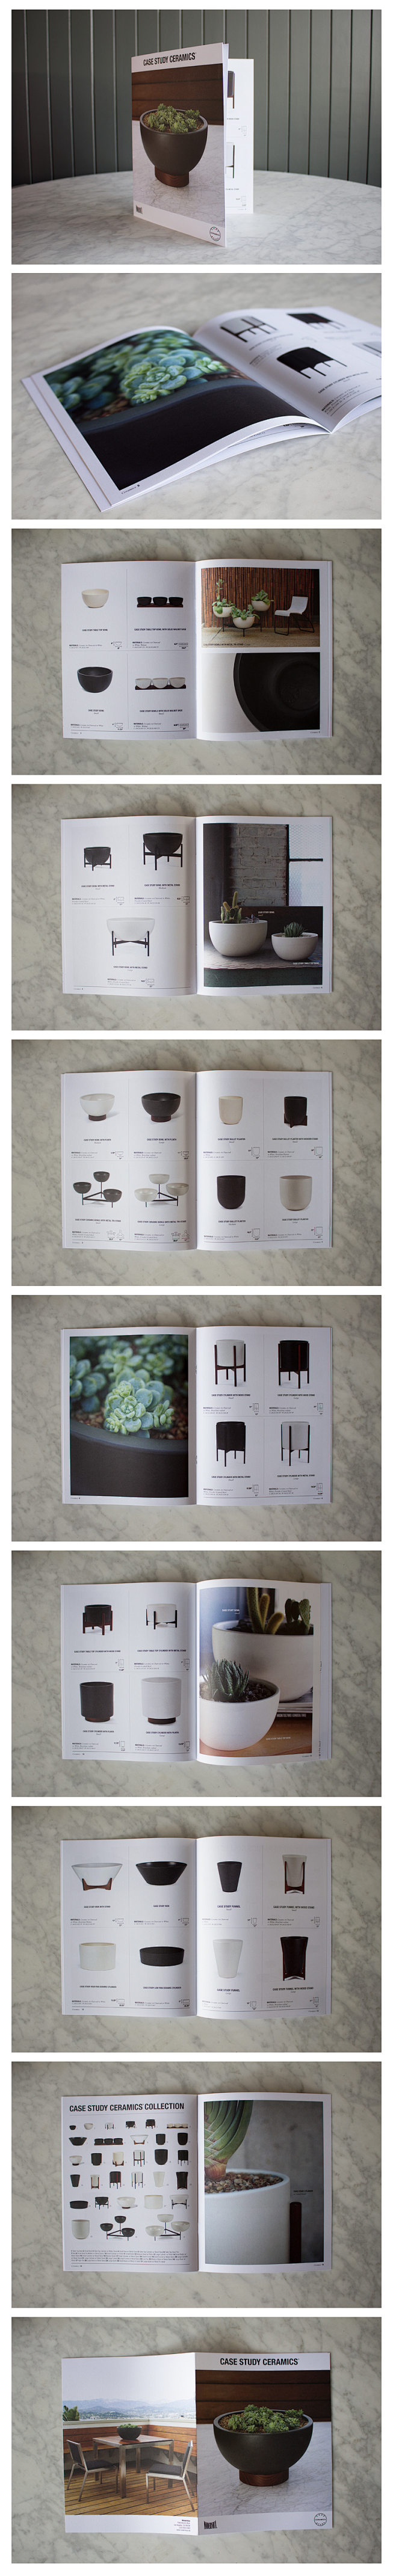 Modernica陶瓷产品画册设计欣赏 ...